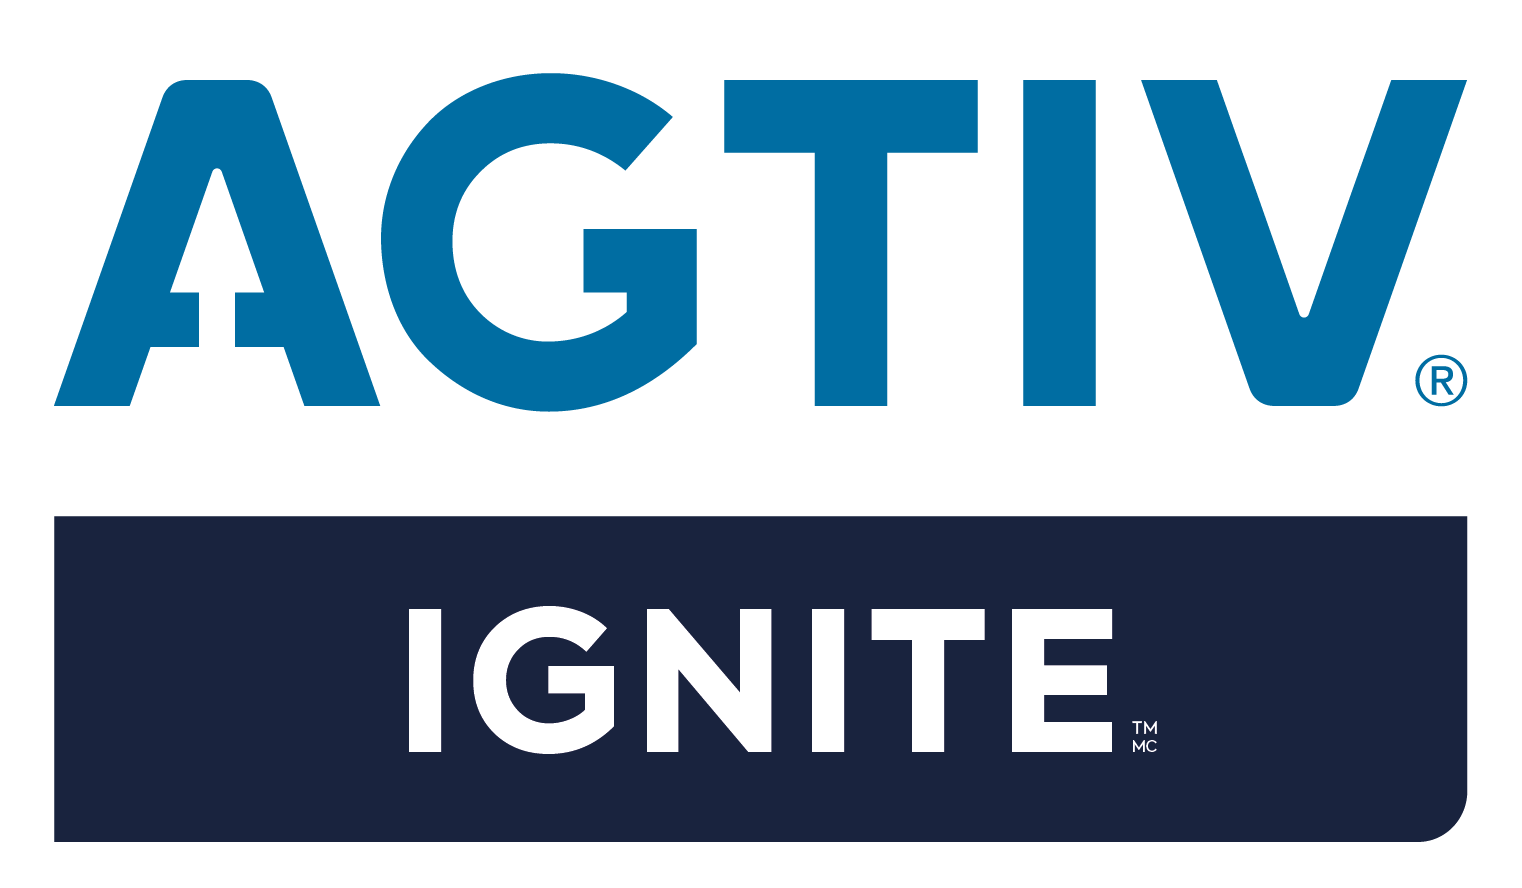 AGTIVE IGNITE logo